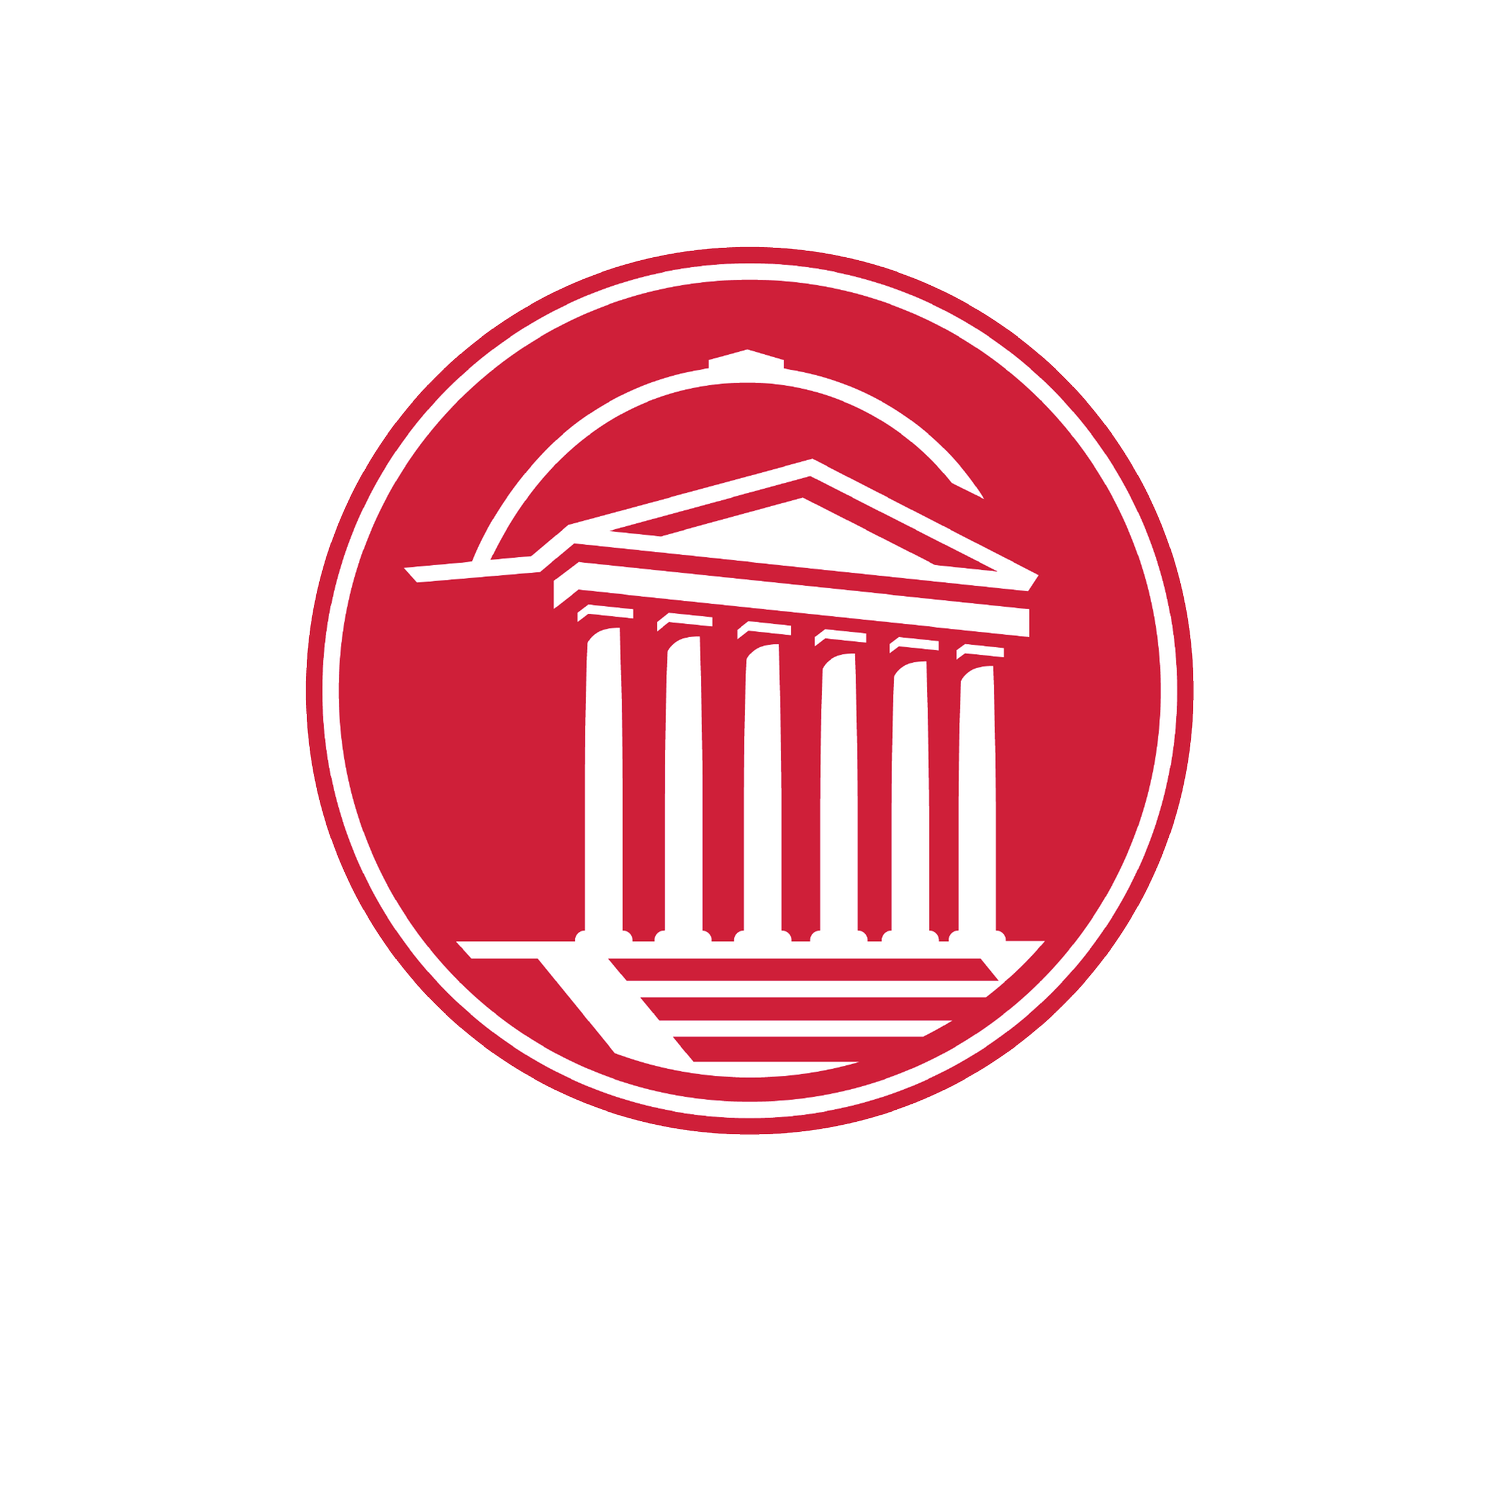 SMU Student Senate